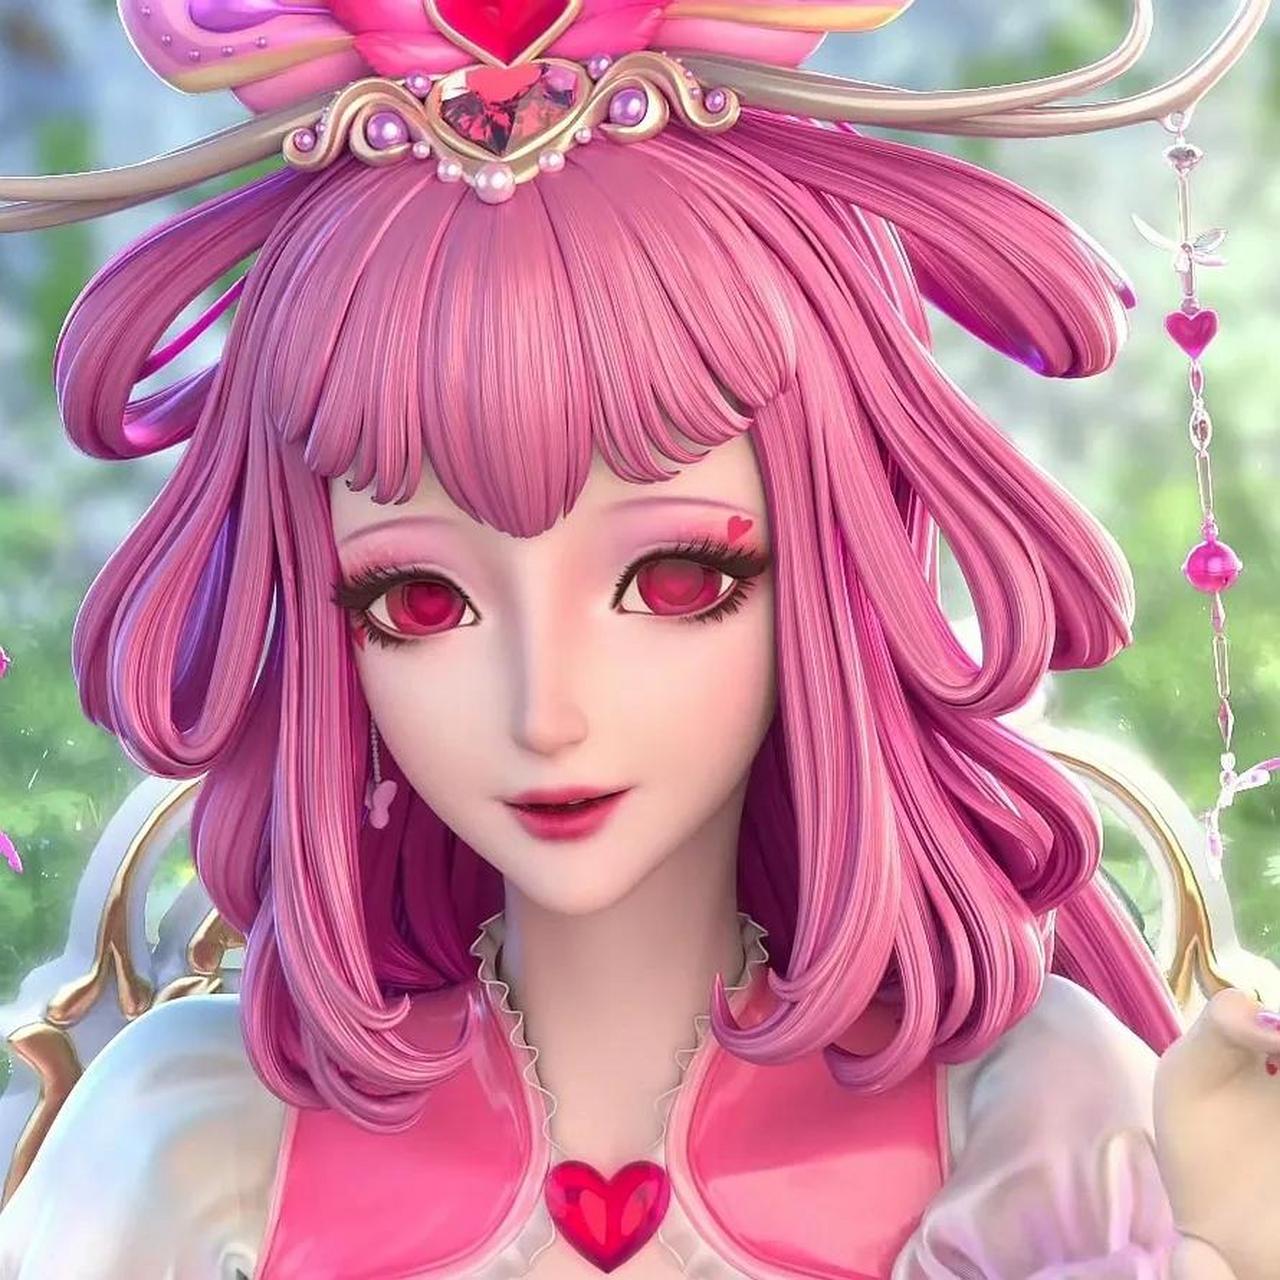 粉色头发的角色你喜欢哪一个?当然首选叶罗丽仙子情公主